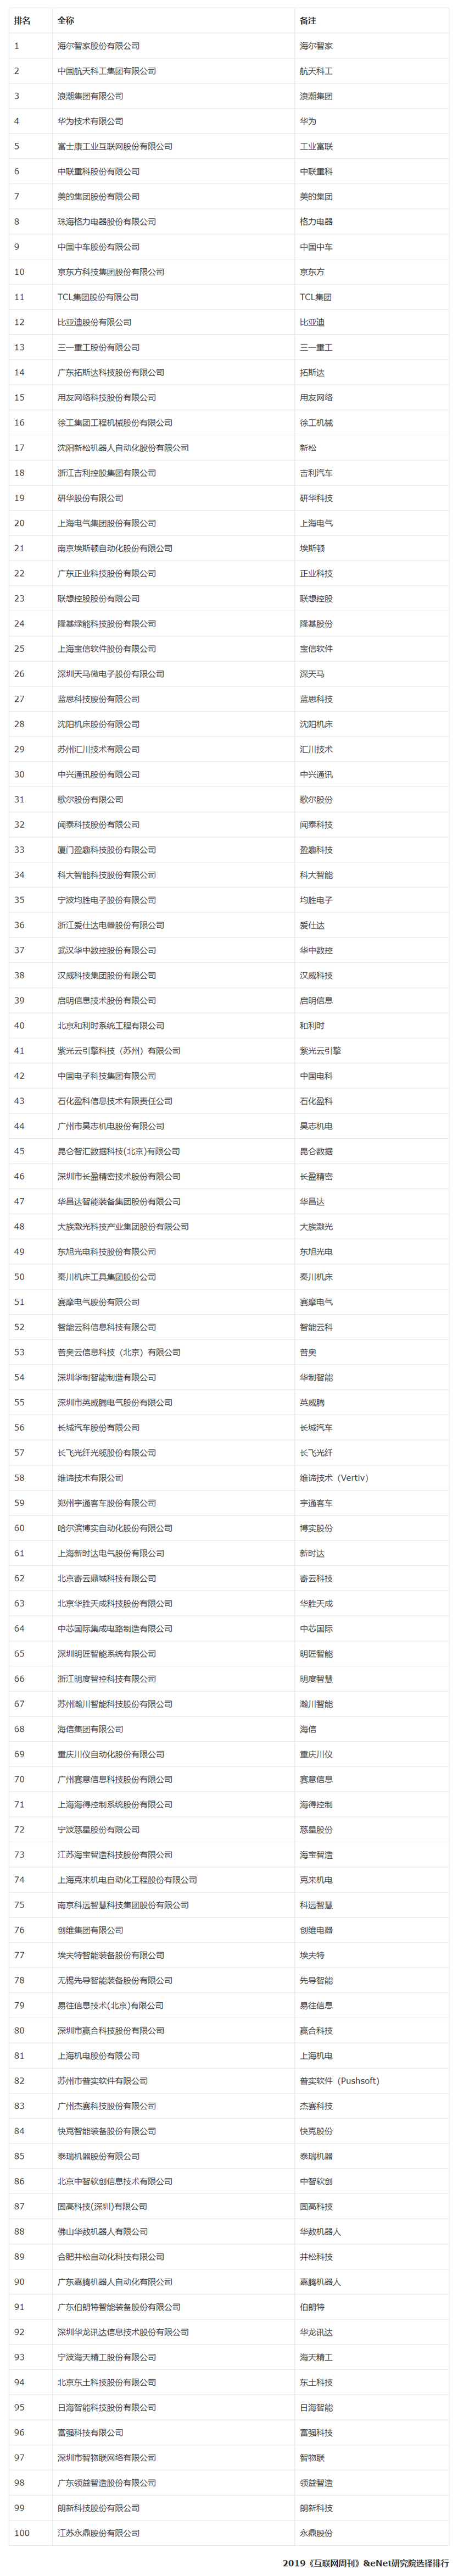 2019中国智能制造企业TOP100-瑞穆科技.png